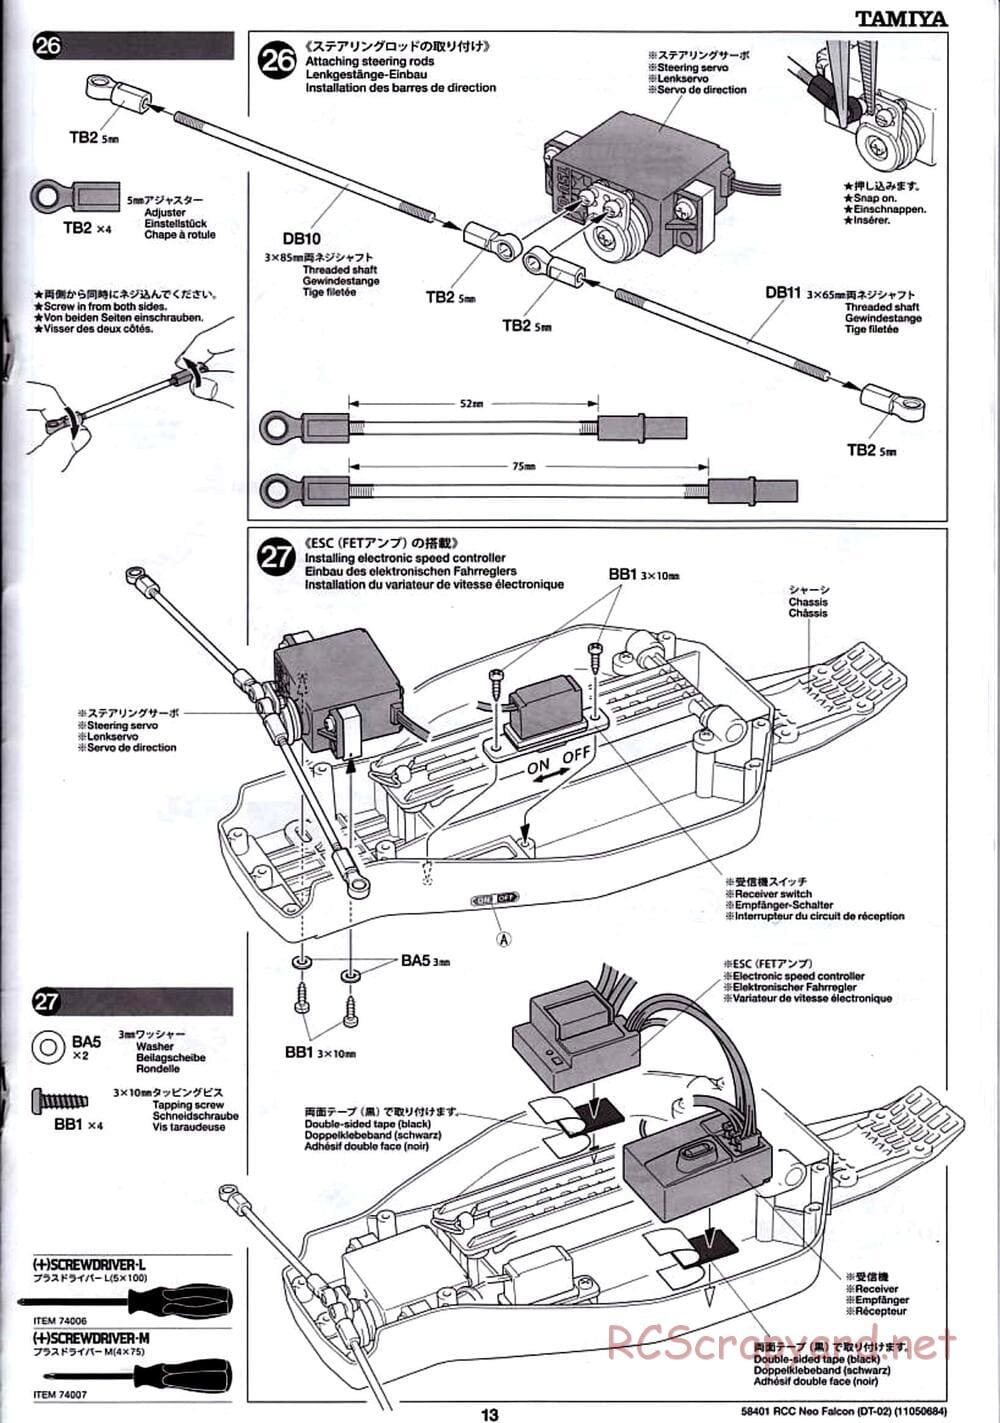 Tamiya - Neo Falcon Chassis - Manual - Page 13